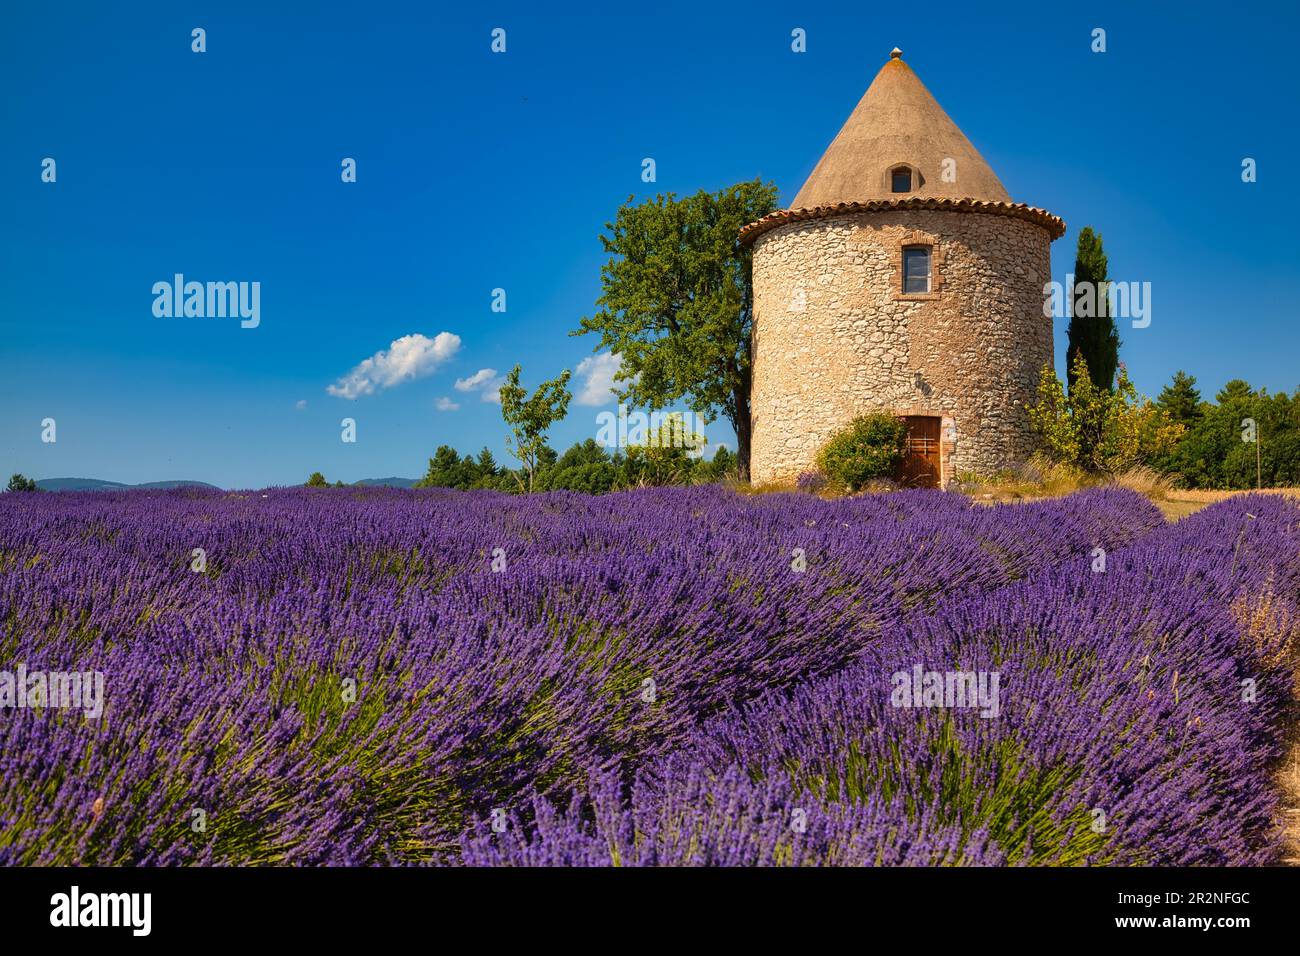 Tour sur le champ de lavande, Luberon, Département du Vaucluse dans la région Provence-Alpes-Côte d'Azur, Provence, France Banque D'Images